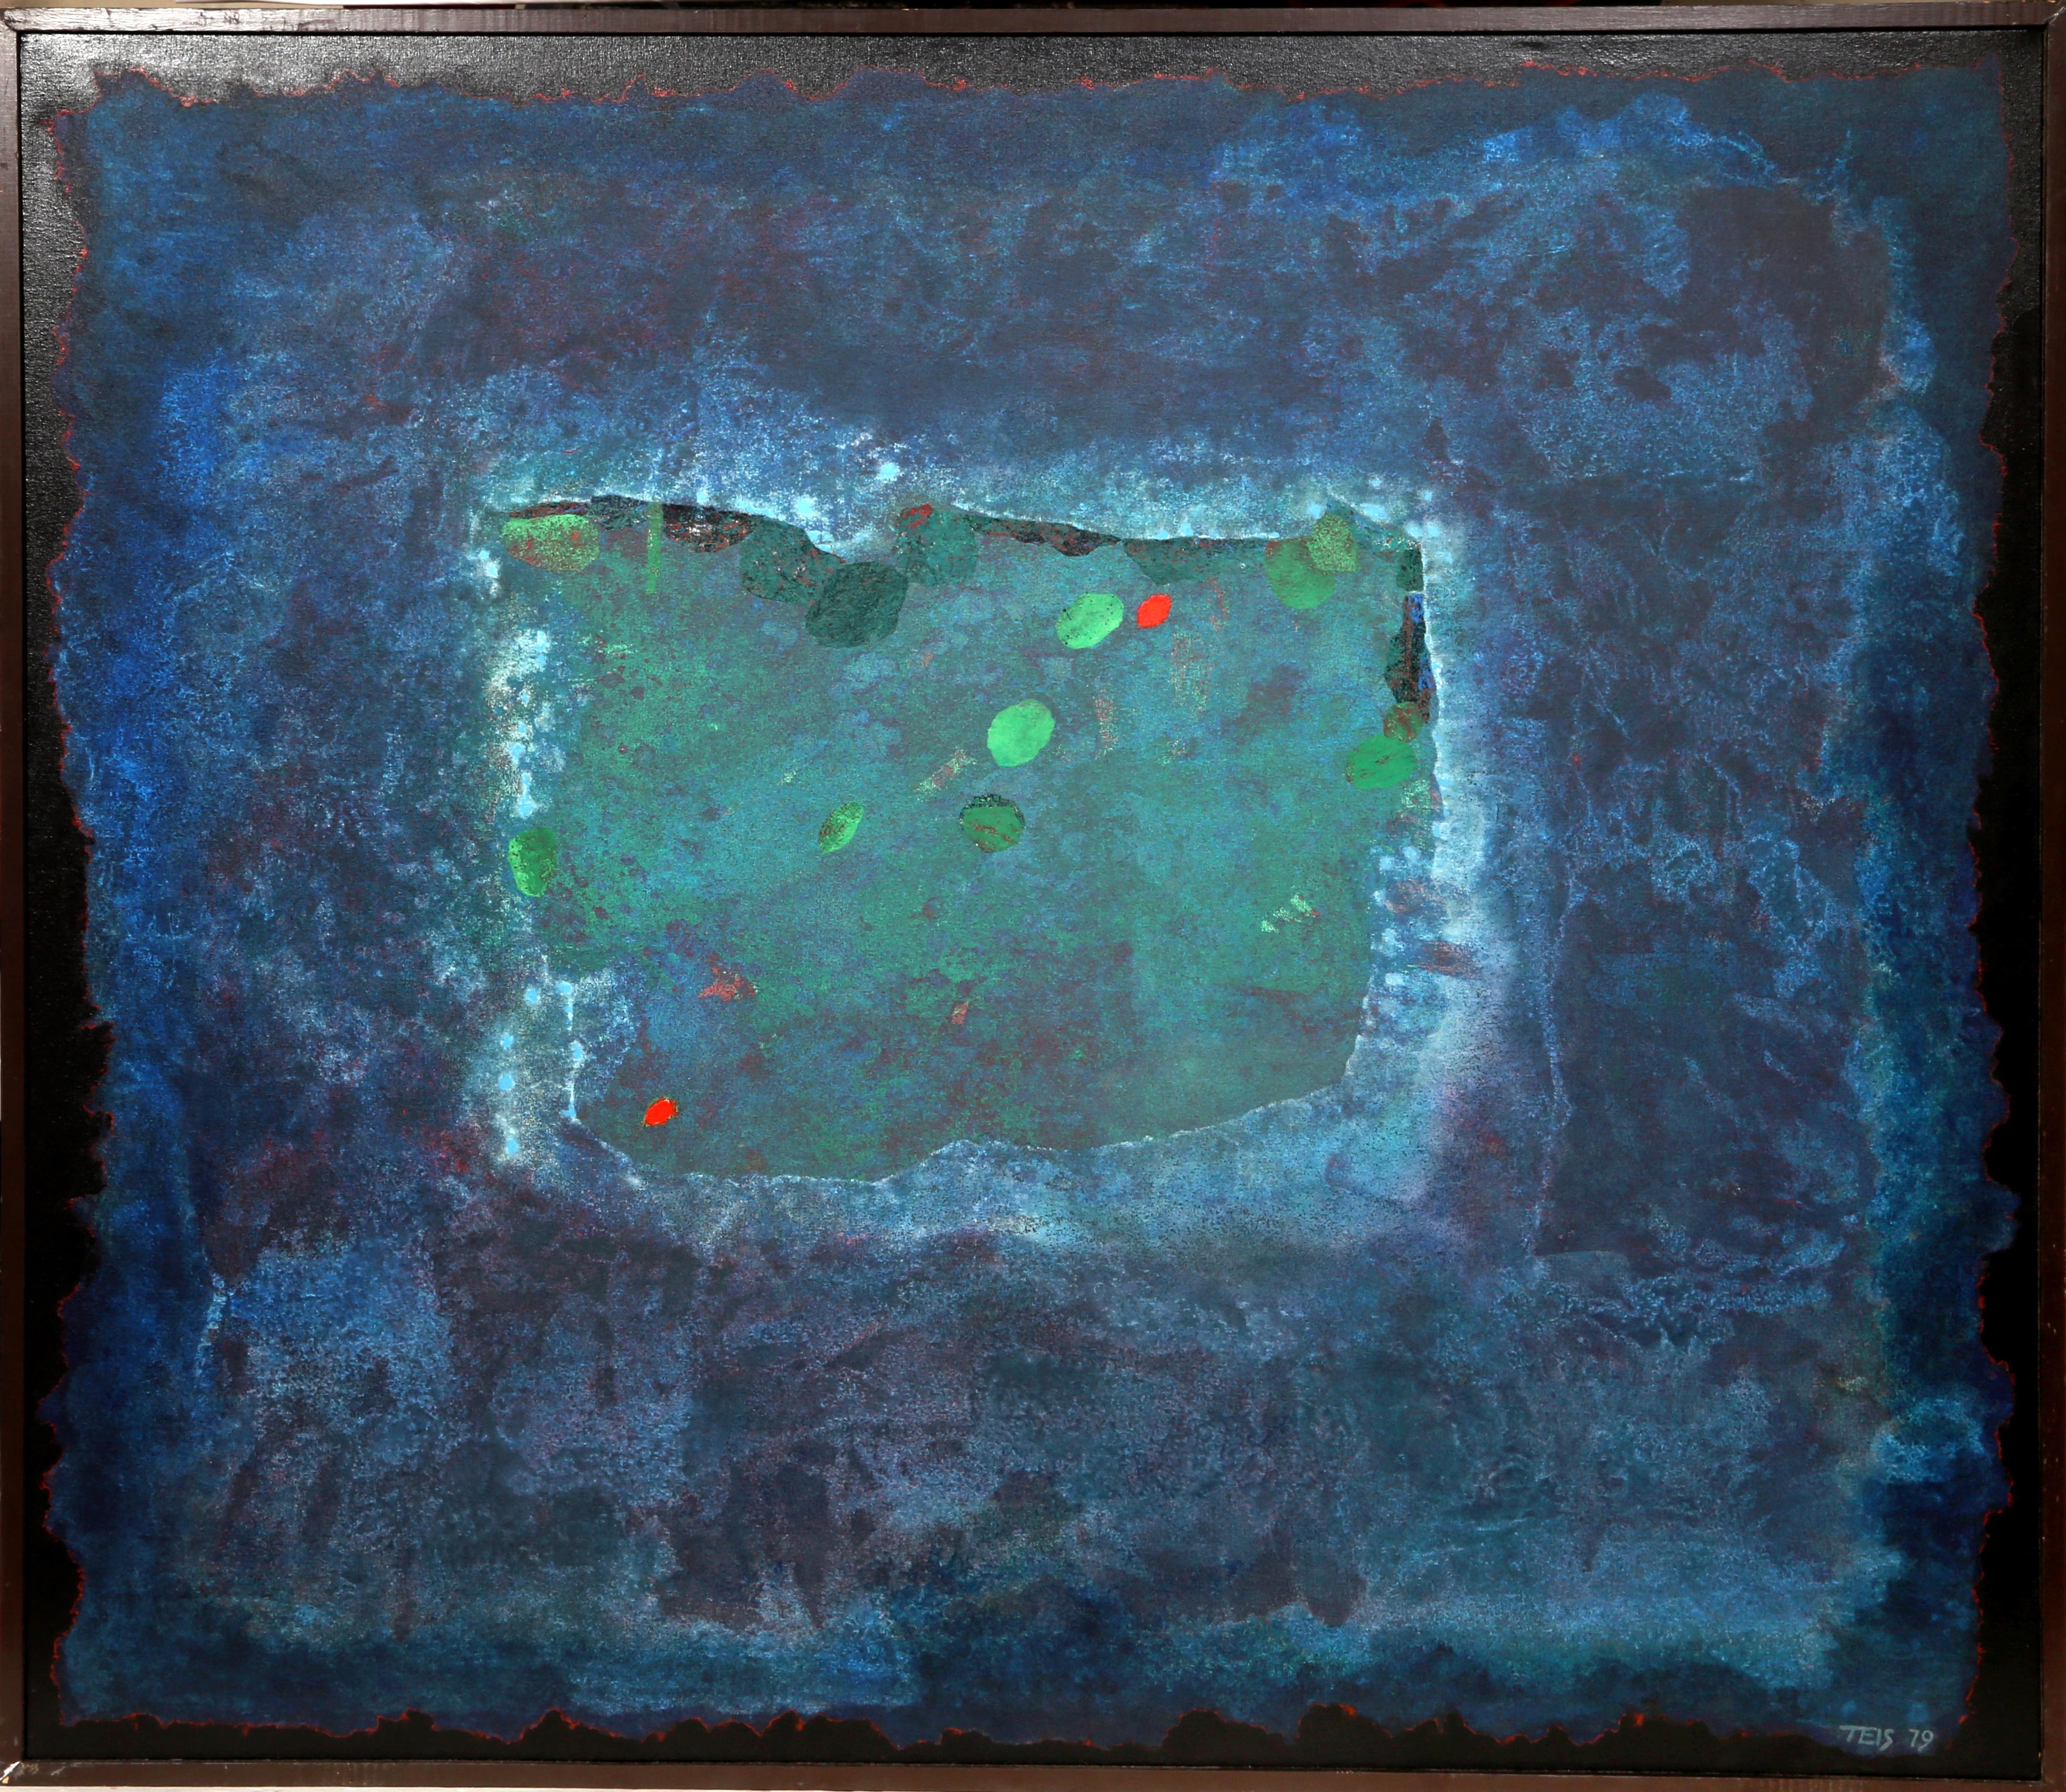 Artistics : Dan Teis, Américain (1925 - 2002)
Titre : Lac abstrait avec des nénuphars
Année : 1979
Médium : Acrylique sur toile, signée à gauche.
Taille : 54 x 60 in. (137.16 x 152.4 cm)
Taille du cadre : 55 x 61.5 pouces